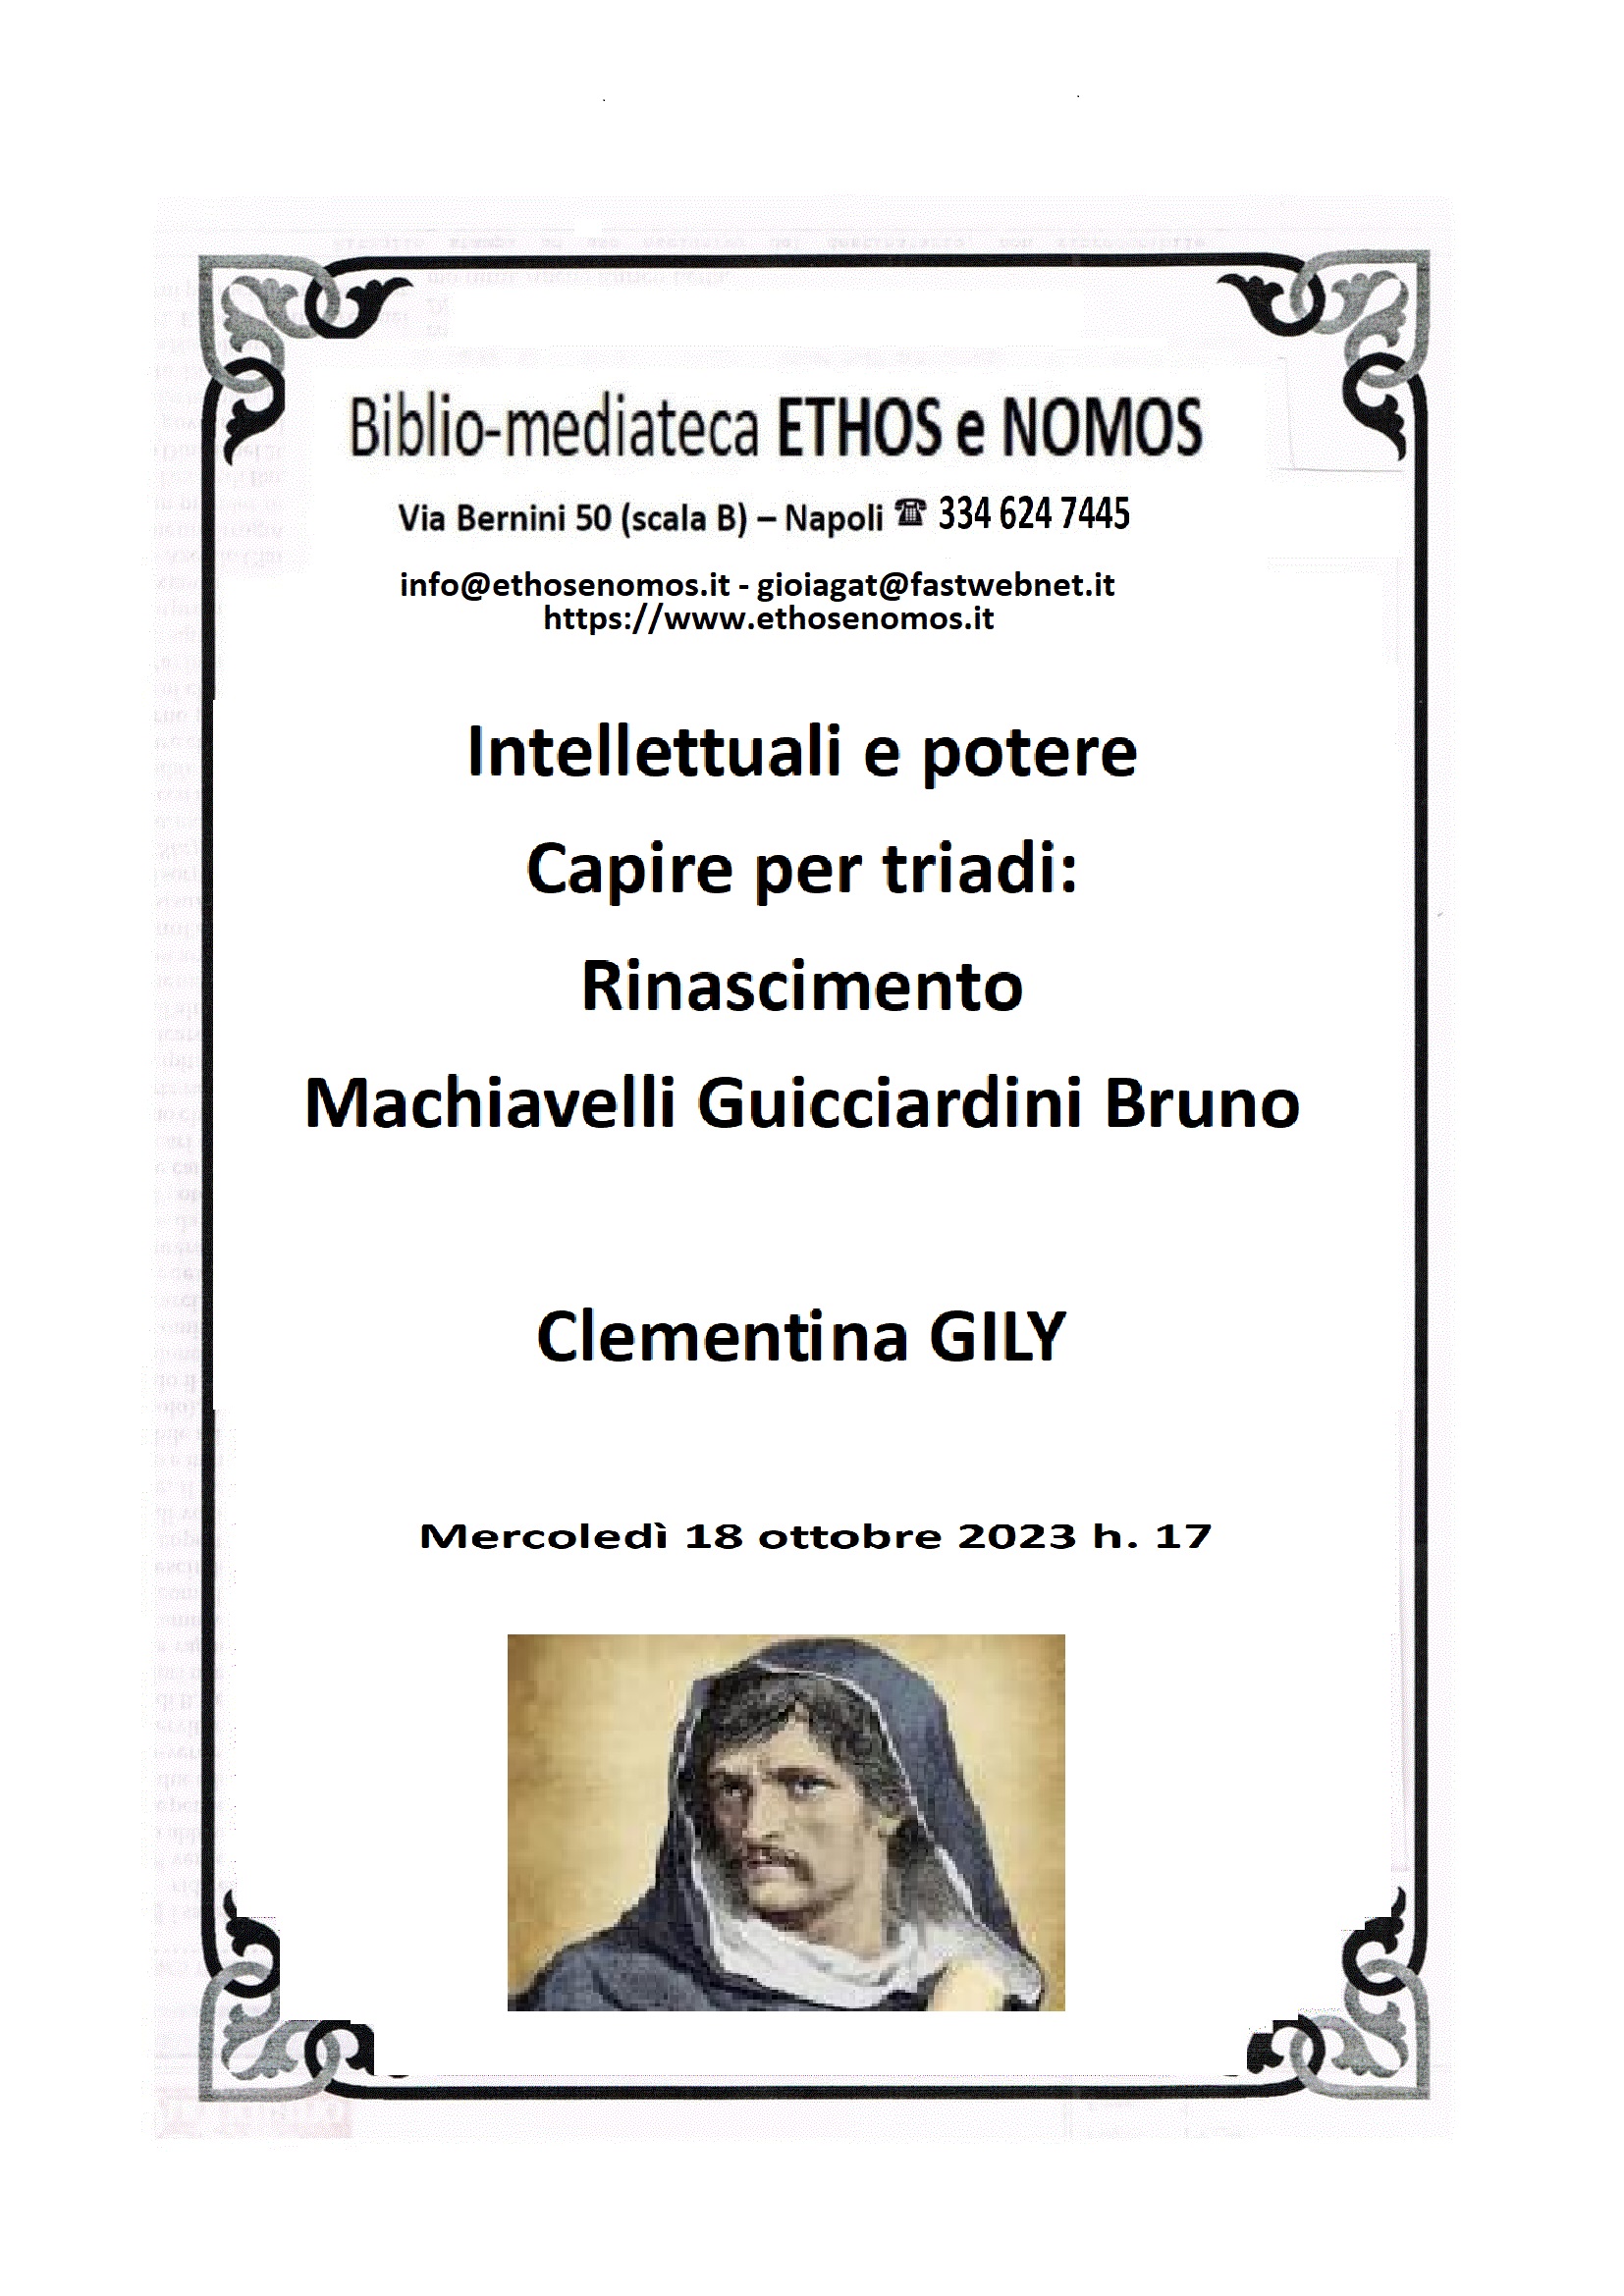 Clementina Gily - Intellettuali e potere. Capire per triadi: Rinascimento, Machiavelli, Guicciardini, Bruno